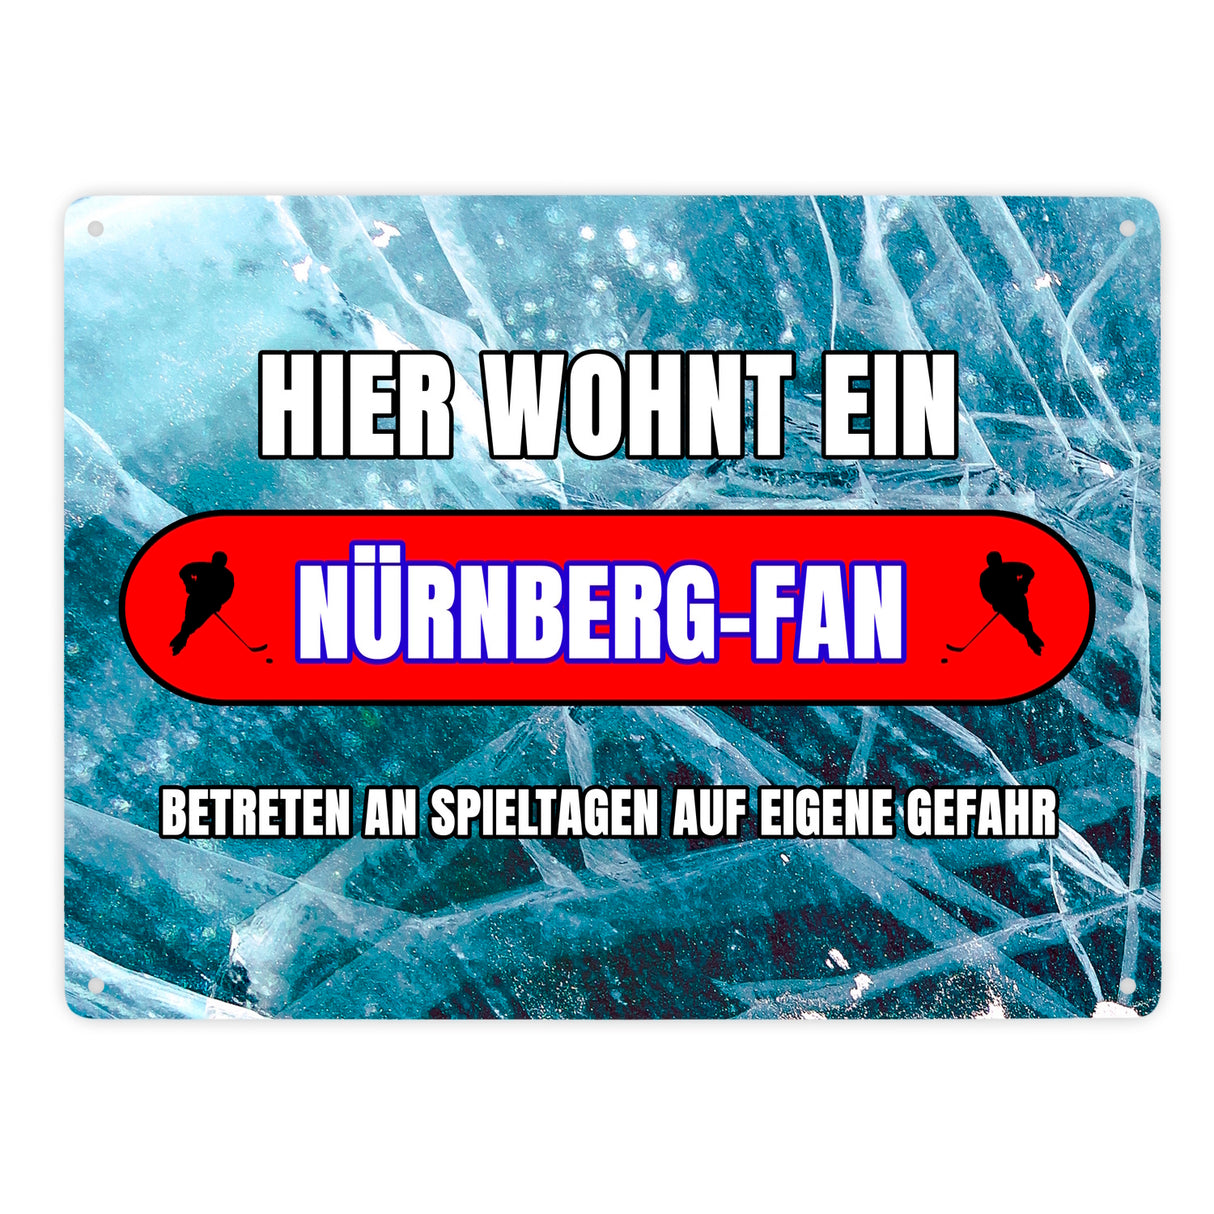 Hier wohnt ein Nürnberg-Fan Metallschild in 15x20 cm mit Eishallen Boden-Motiv